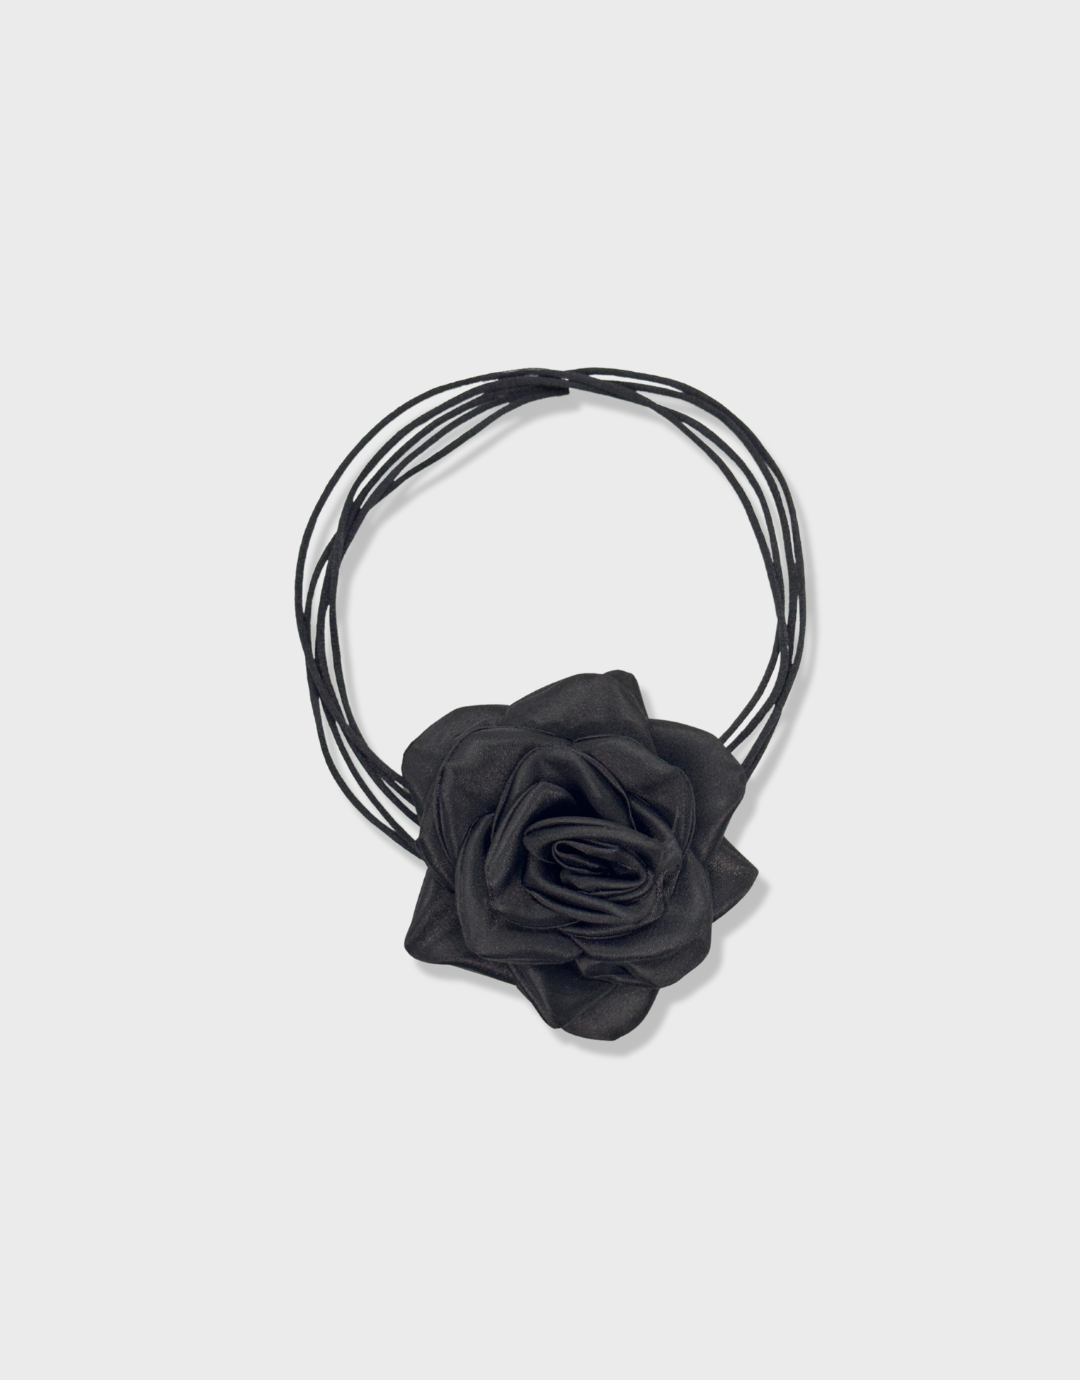 Barette rose noire à porter dans les cheveux, broche à porter sur une veste, Fleur, ceinture avec fleurs, rose choker, collier de roses 